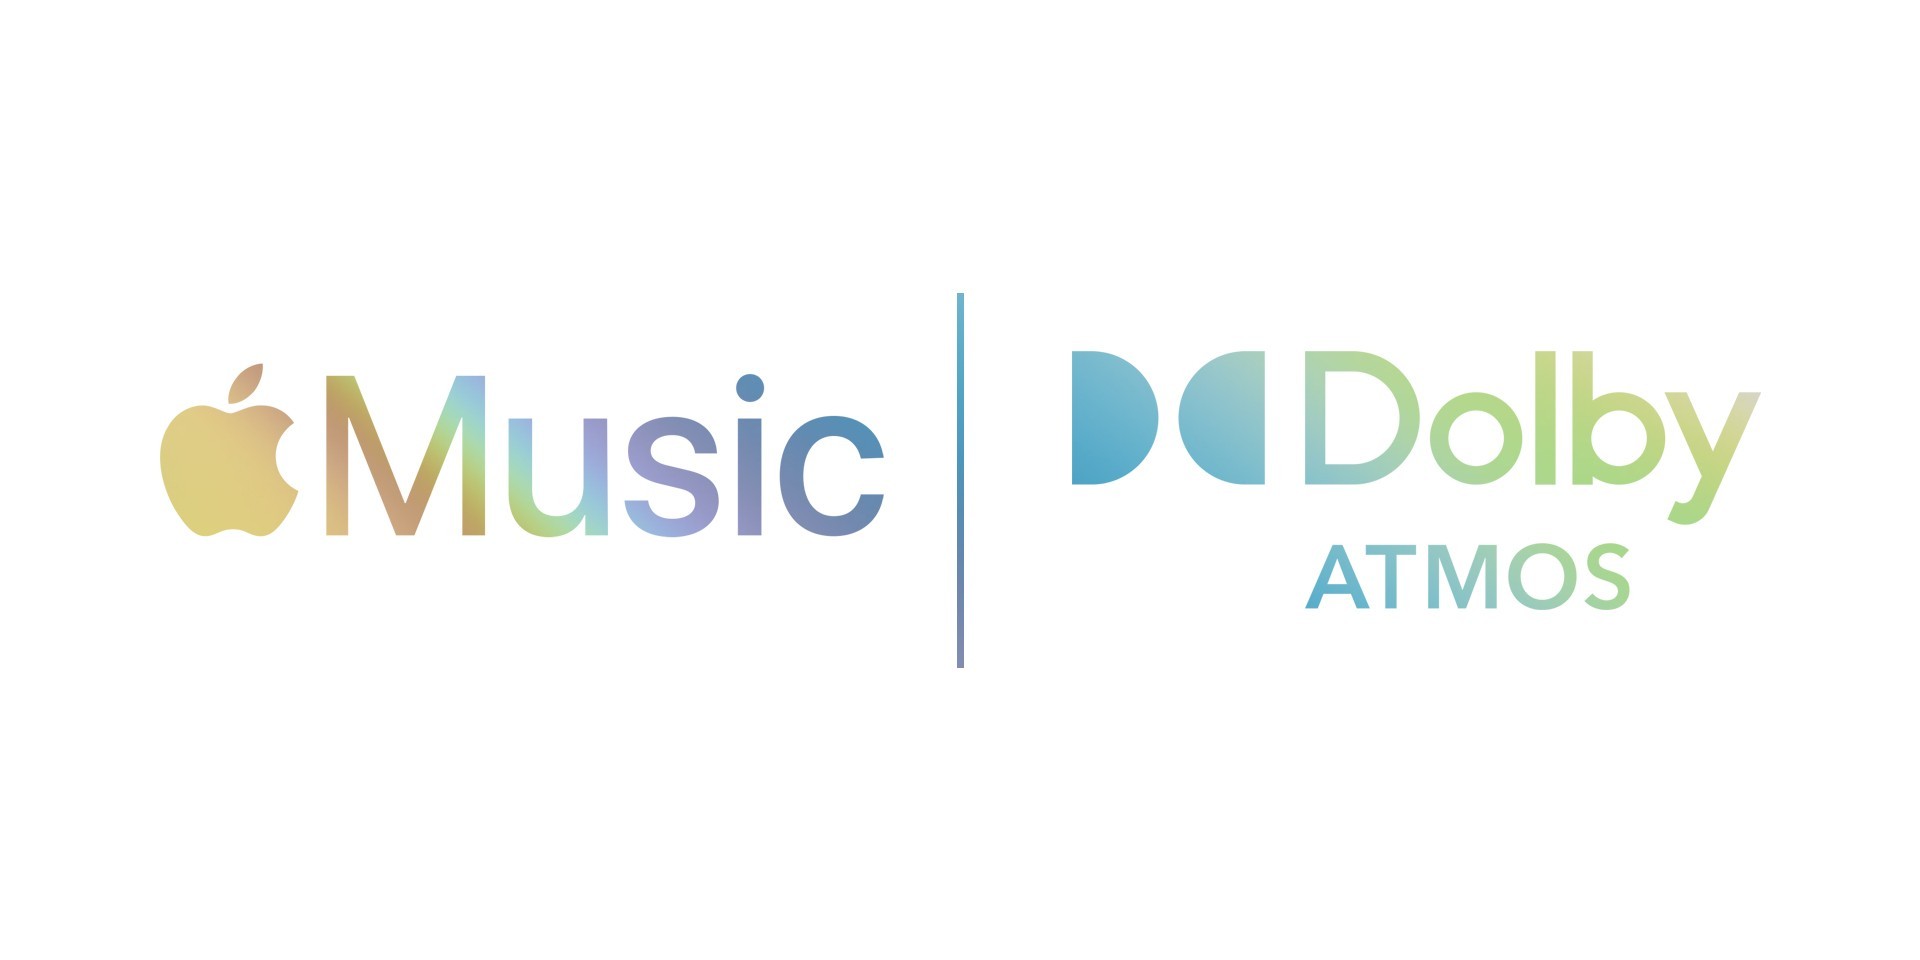 Apple Music Sẽ Cho Phép Người Dùng Nghe Nhạc Chất Lượng Lossless Mà Không Phải Trả Thêm Phí Từ Tháng 6/2021 - Giới Thiệu Về Công Nghẹ Spacial Audio Hợp Tác Với Dolby Atmos